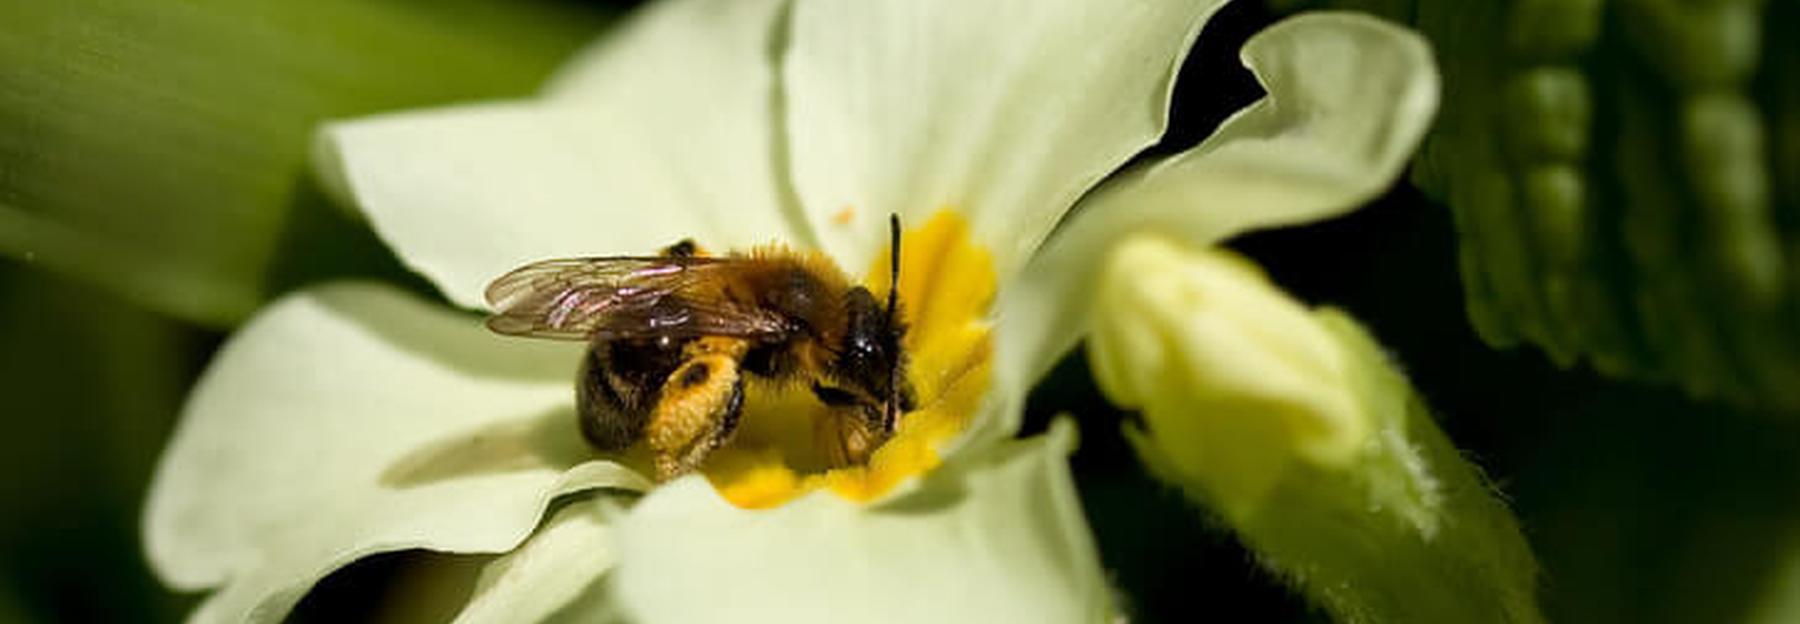 Vielfältige Wildbienenarten sind entscheidend für die Bestäubung unzähliger Blütenpflanzen.